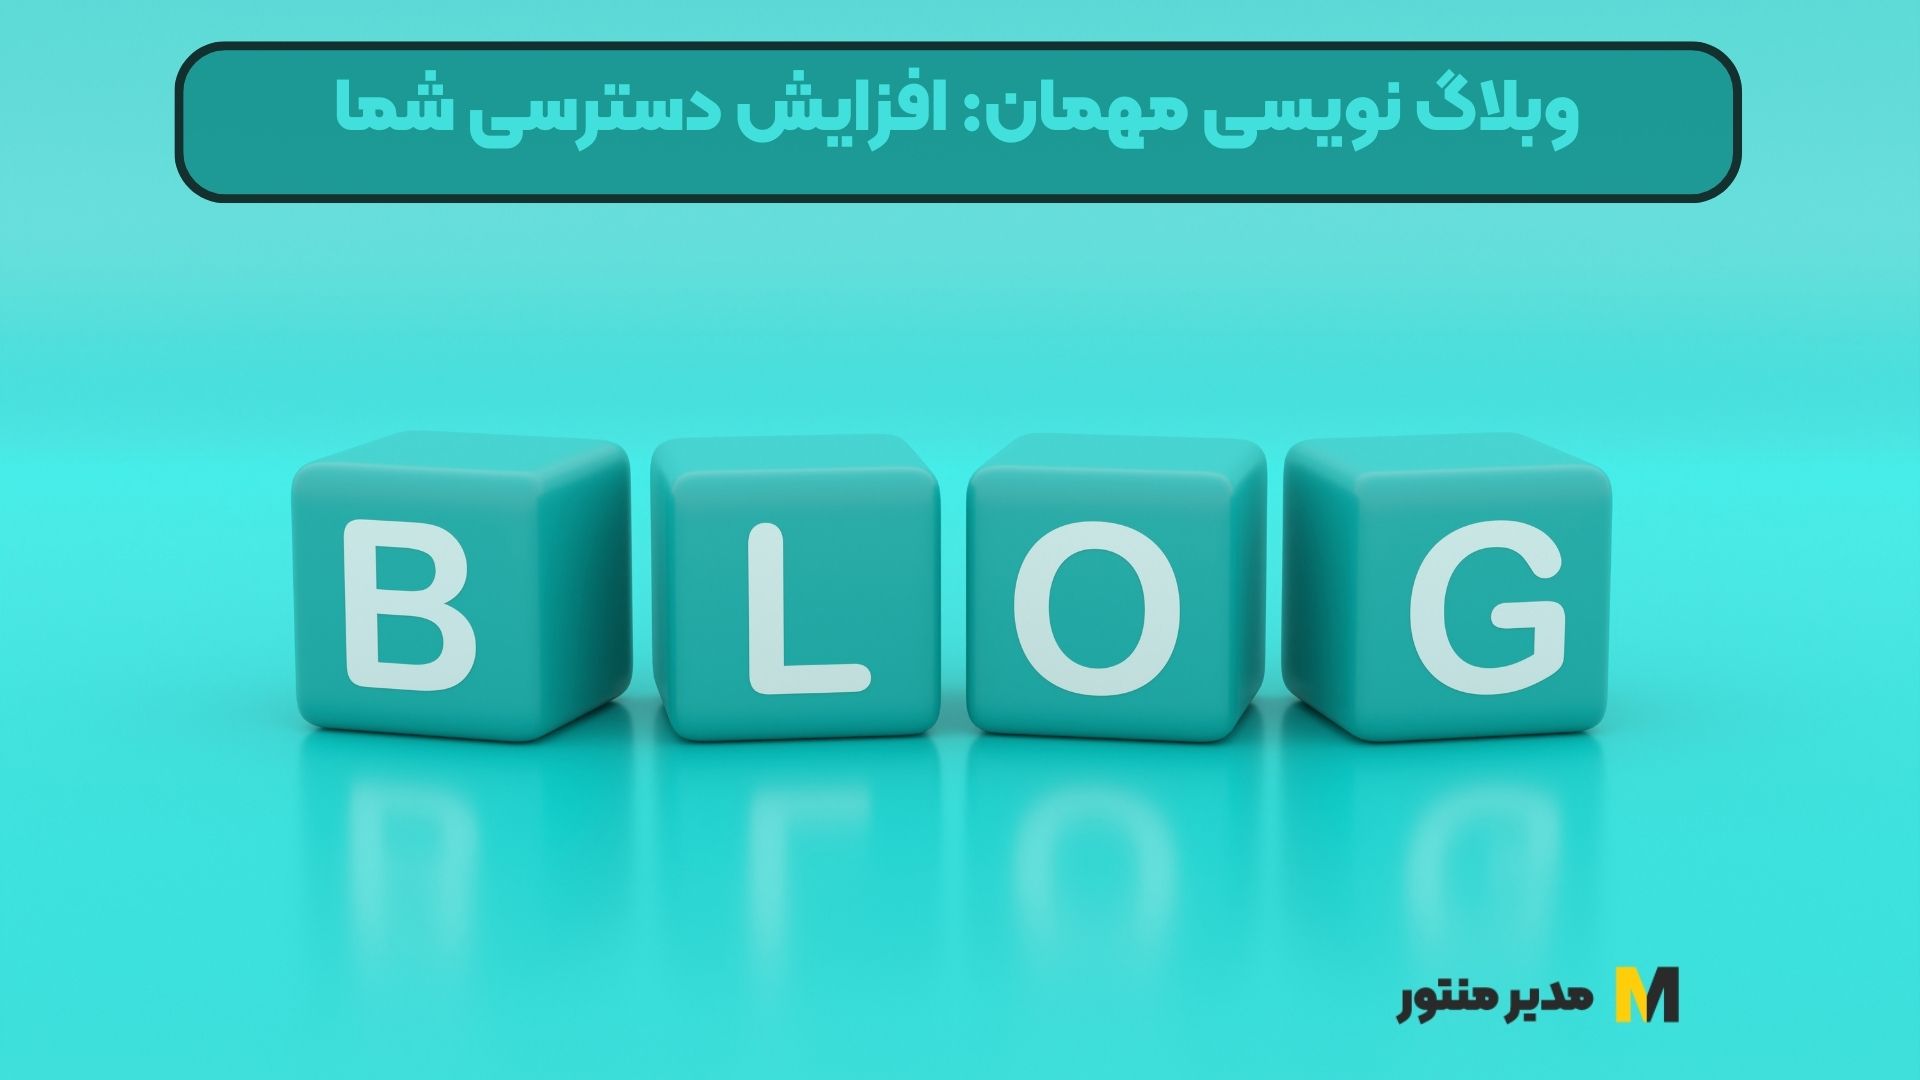 وبلاگ نویسی مهمان: افزایش دسترسی شما